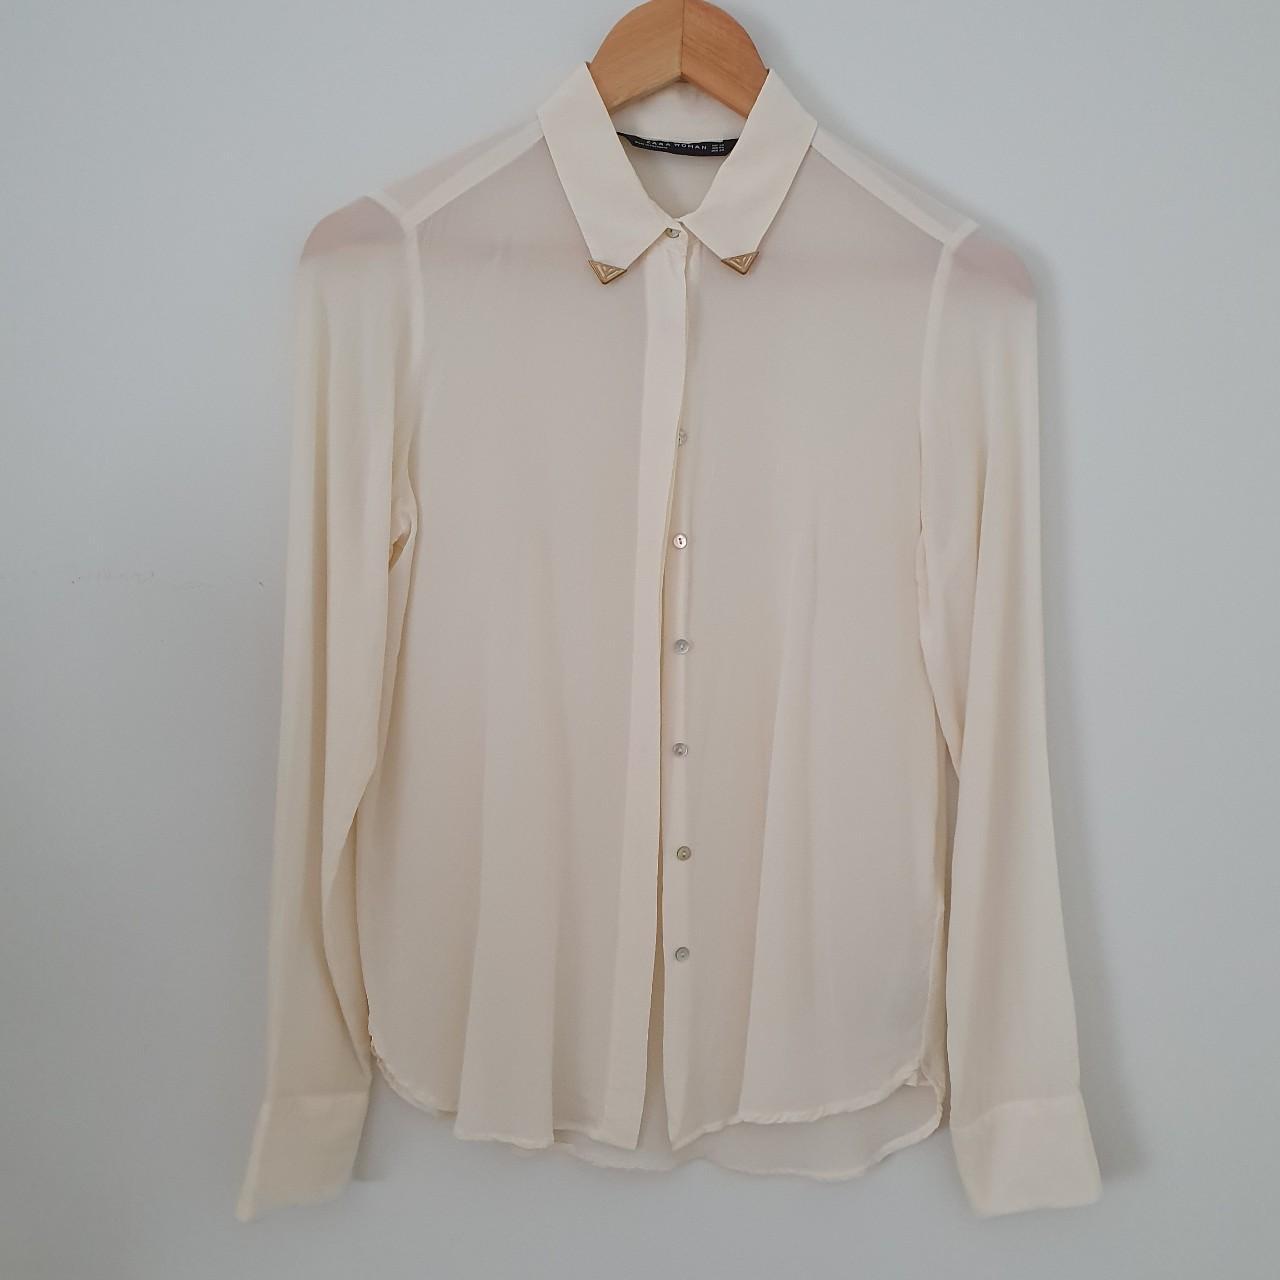 Zara silk button up long sleeved blouse size XS. -... - Depop